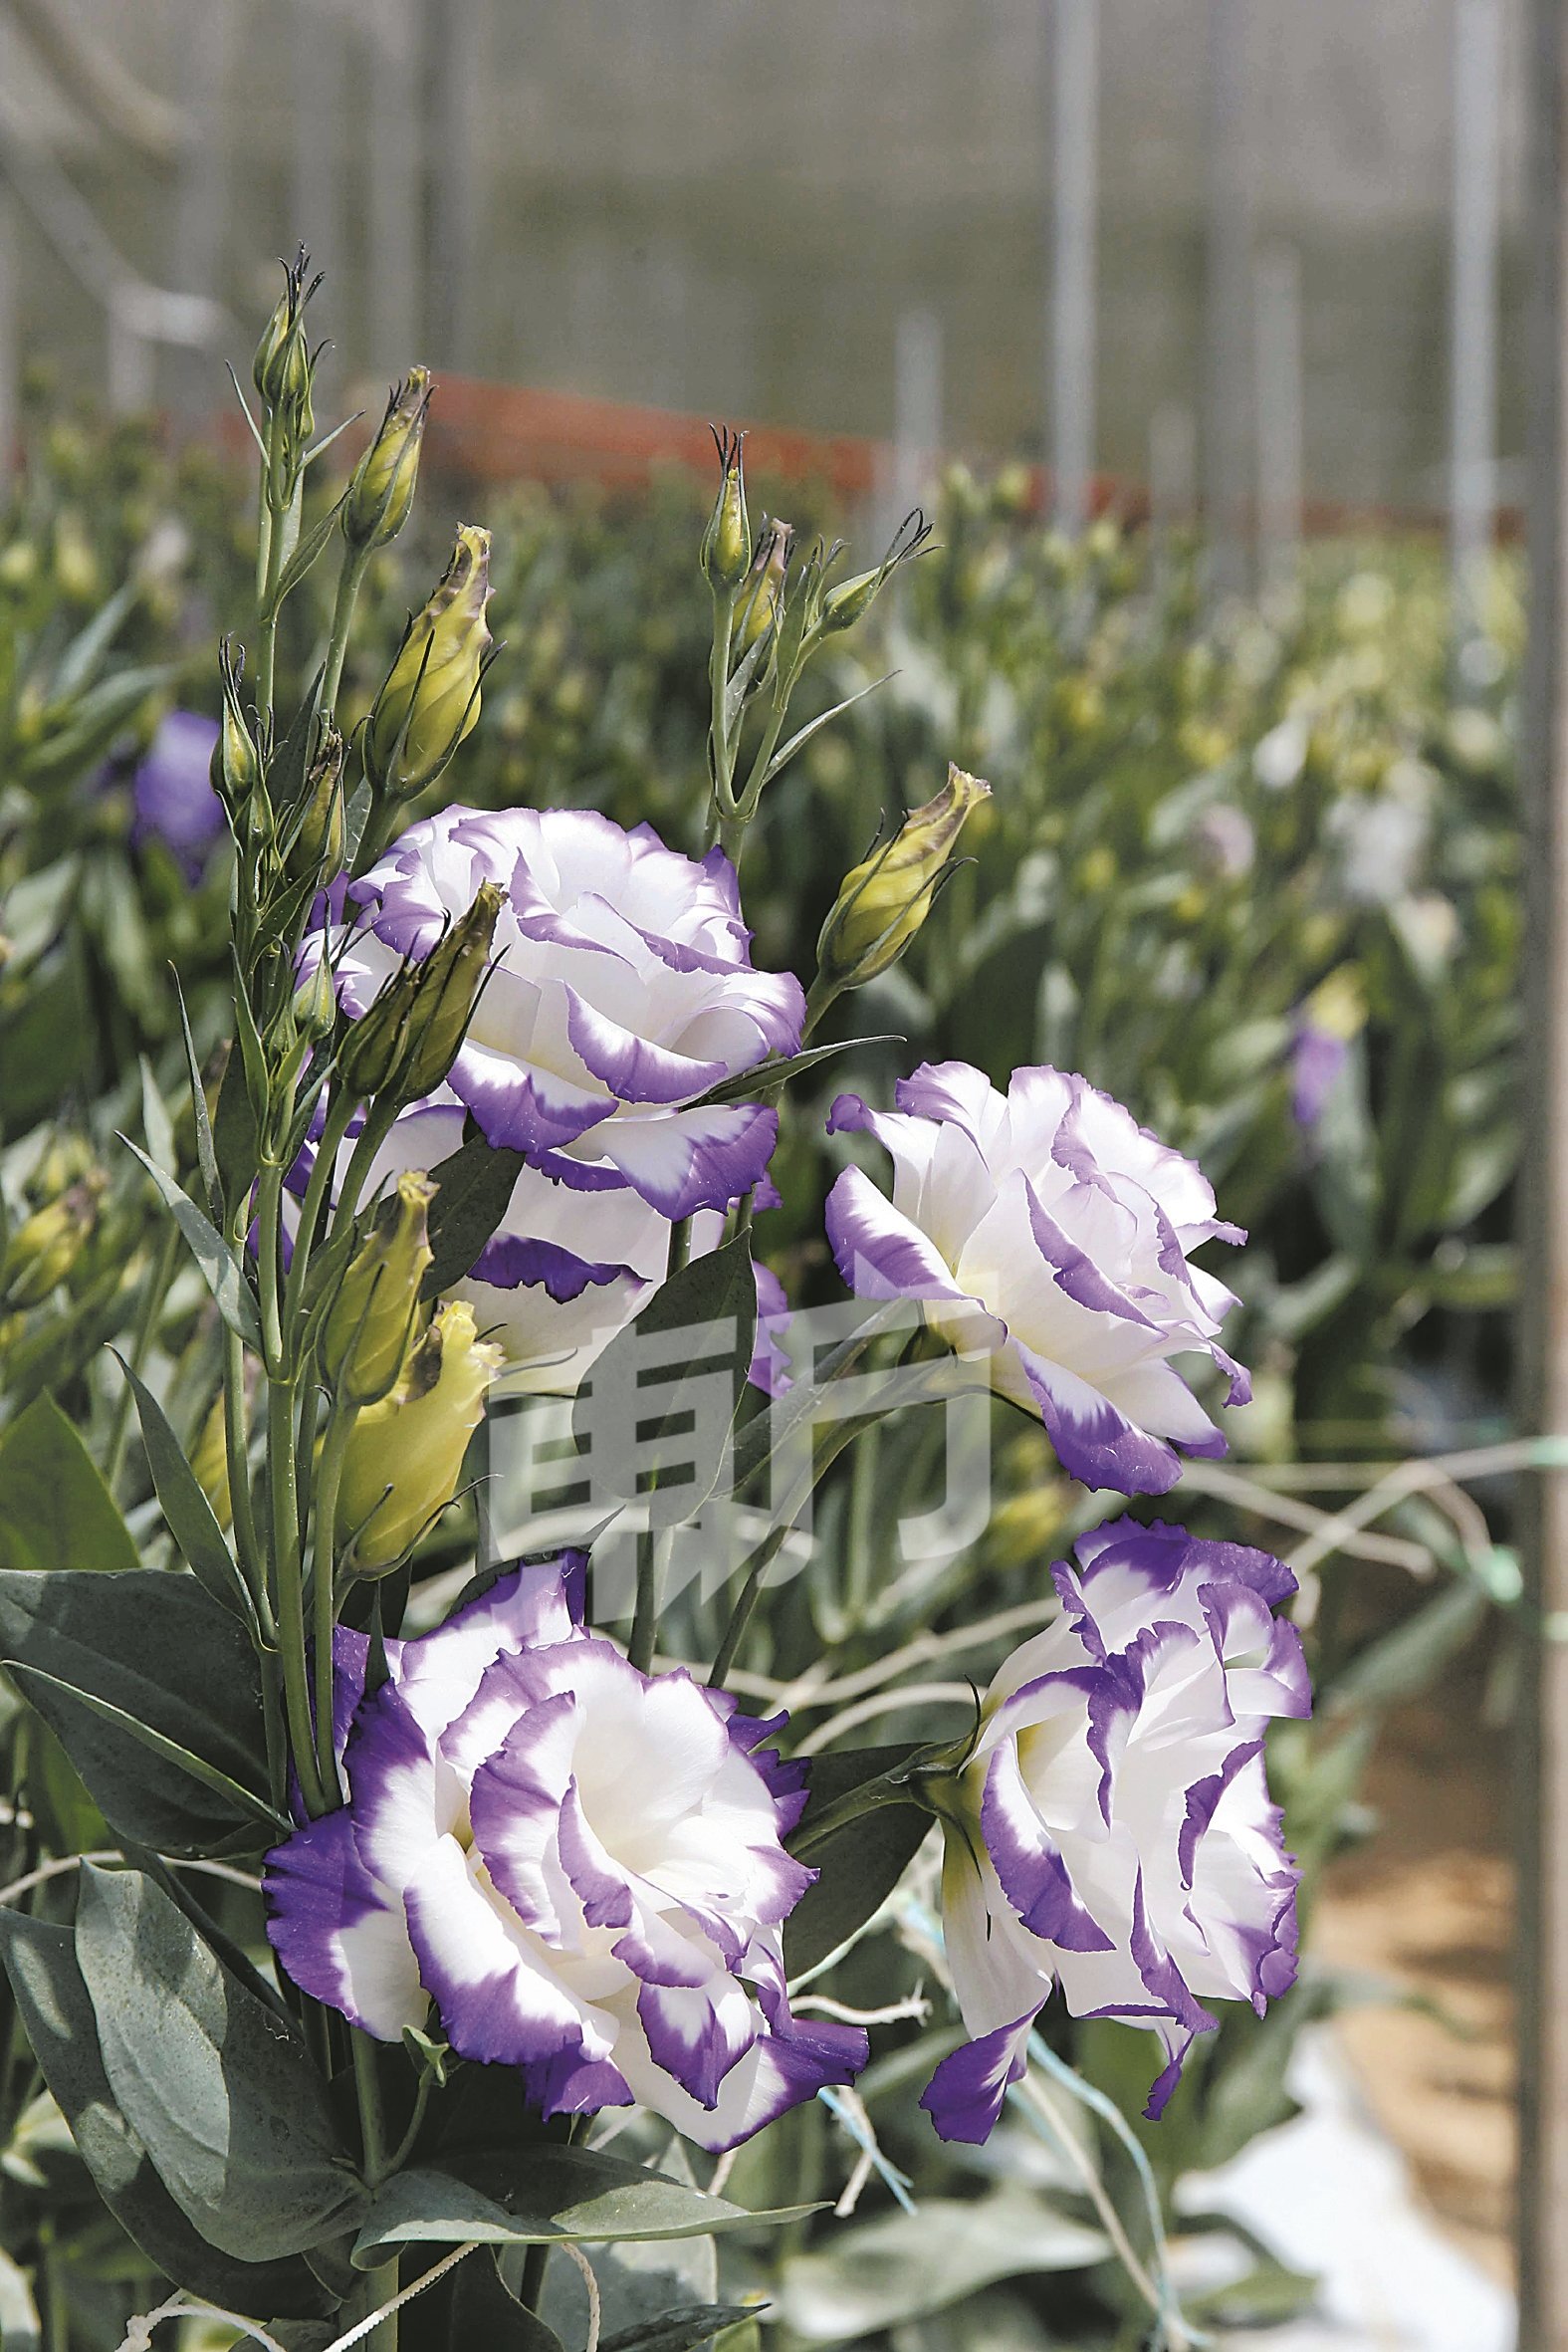 颜色内白外紫的洋桔梗虽看似特别，但基于花色抢眼，不适合用在插花，所以花店都会比较少用。